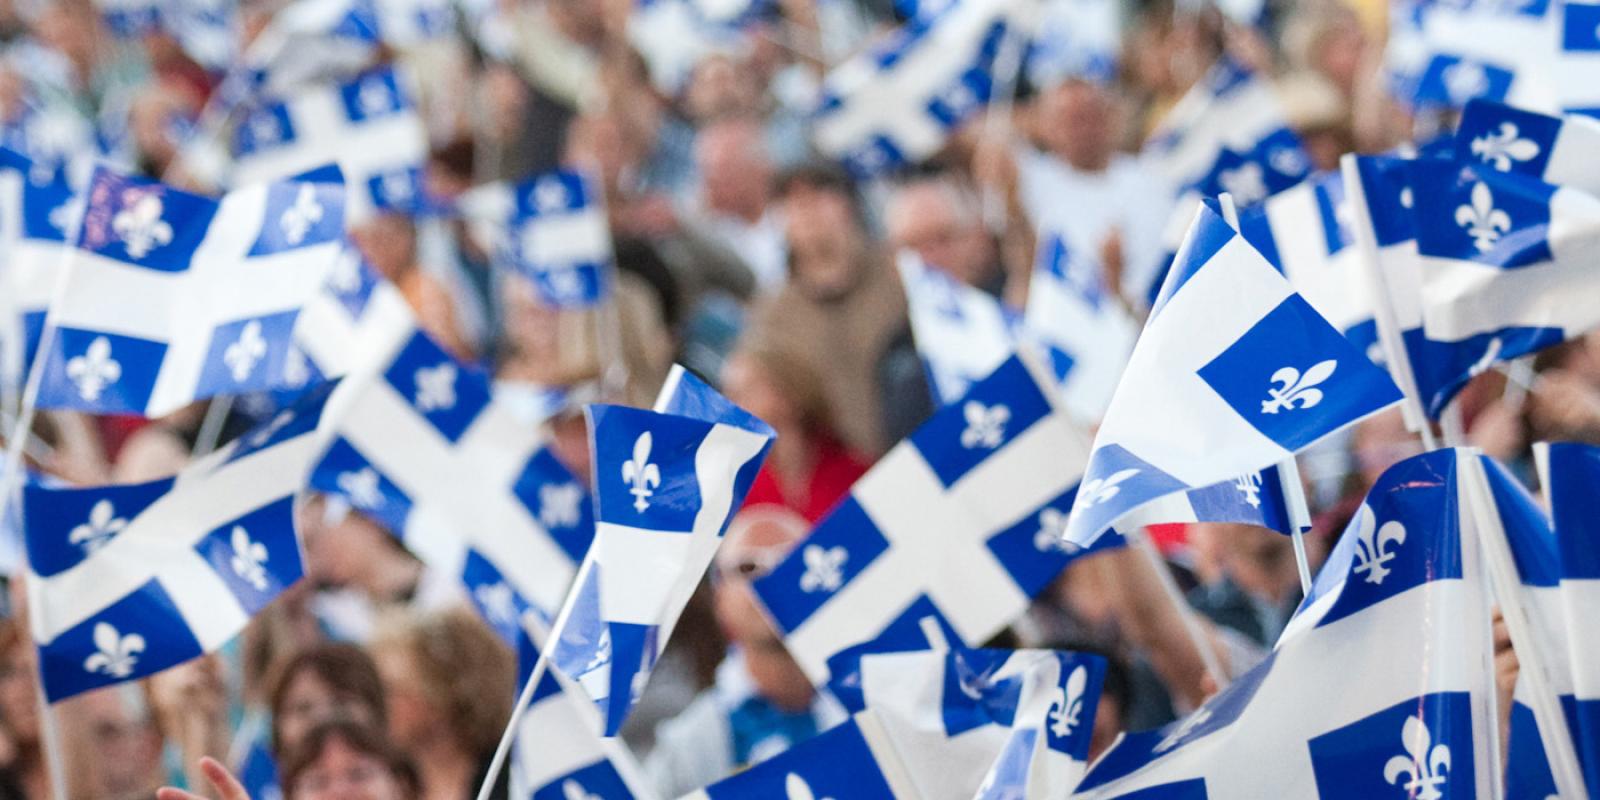 Foule avec drapeaux du Québec